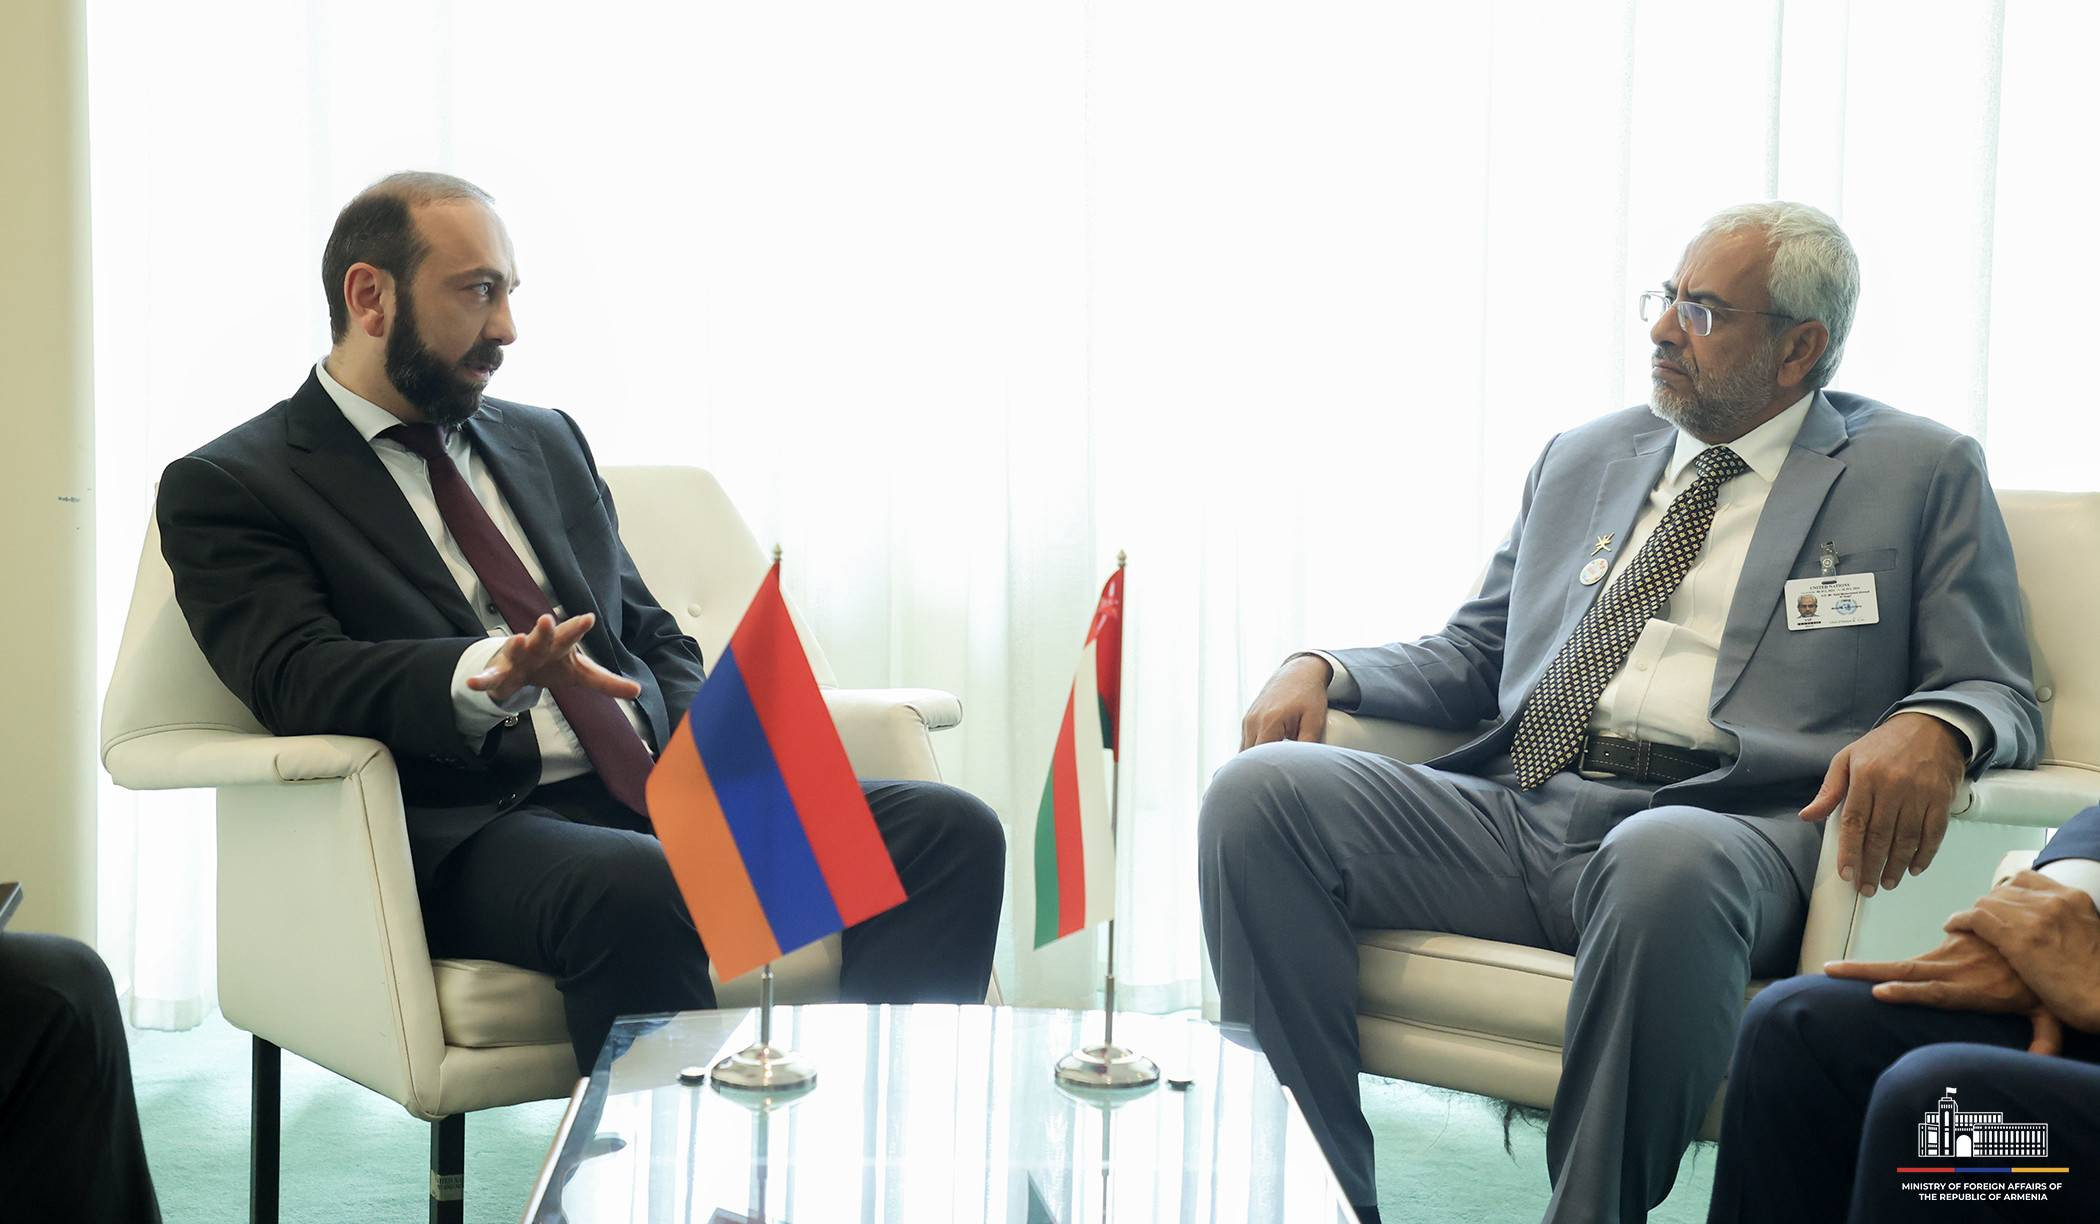 Мирзоян представил министру экономики Омана ситуацию с безопасностью на Южном Кавказе и проект «Перекресток мира»